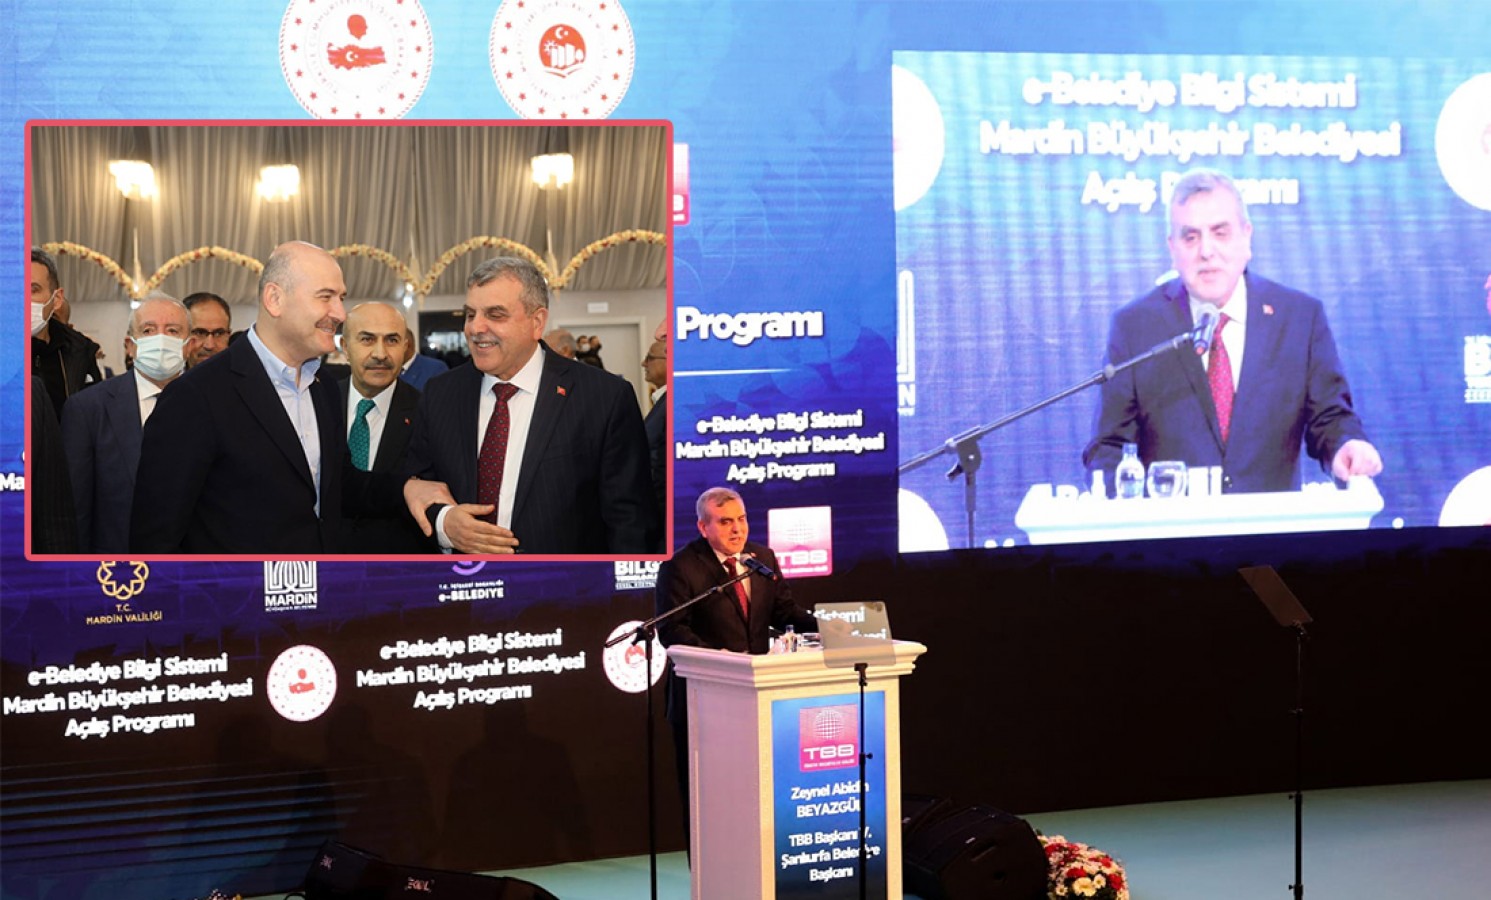 Beyazgül, Mardin’deki e-Belediye bilgi sistemi törenine katıldı;